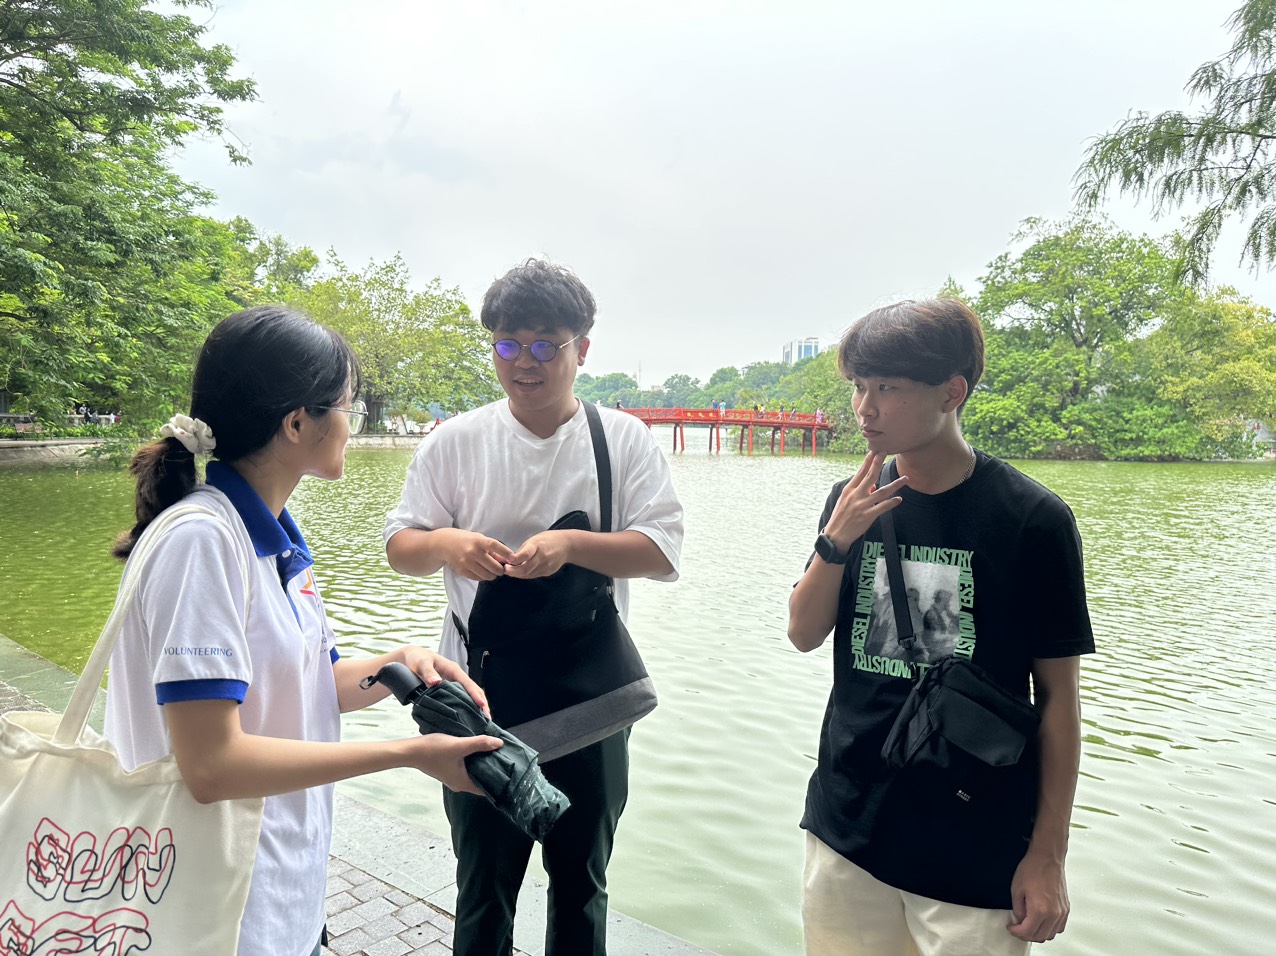                                                                                     Hướng                                                                                    dẫn                                                                                    viên                                                                                    của                                                                                    CLB                                                                                    và                                                                                    2                                                                                    du                                                                                    khách                                                                                    người                                                                                    Nhật                                                                                    đang                                                                                    trao                                                                                    đổi                                                                                    về                                                                                    chuyến                                                                                    đi                                                                                    